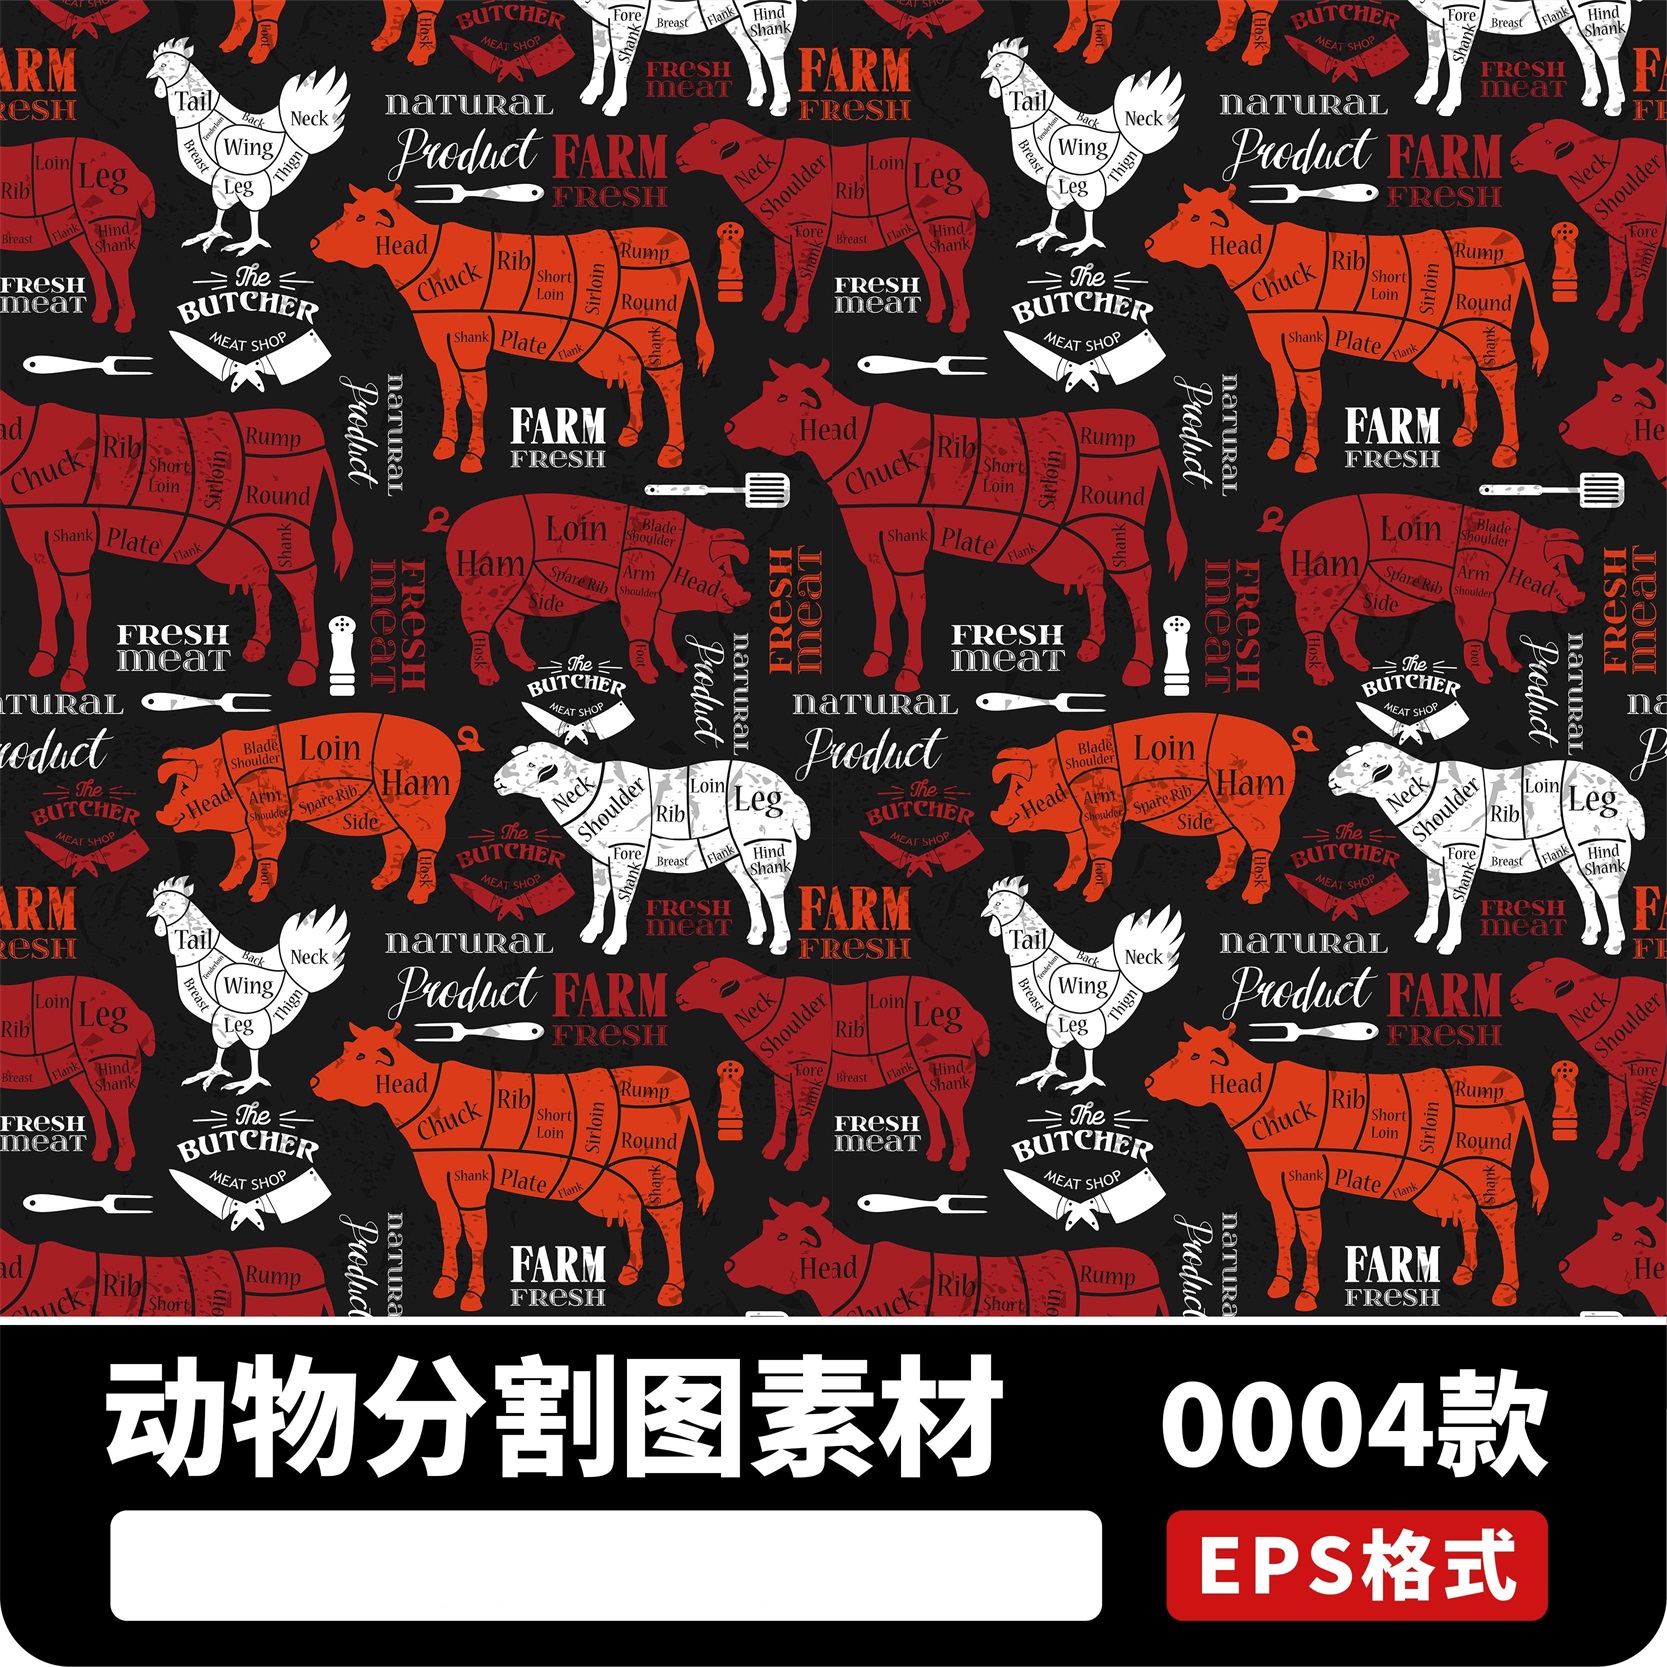 鸡鸭火鸡兔子山羊猪牛禽畜肉类区域分割插画图AI矢量设计素材EPS